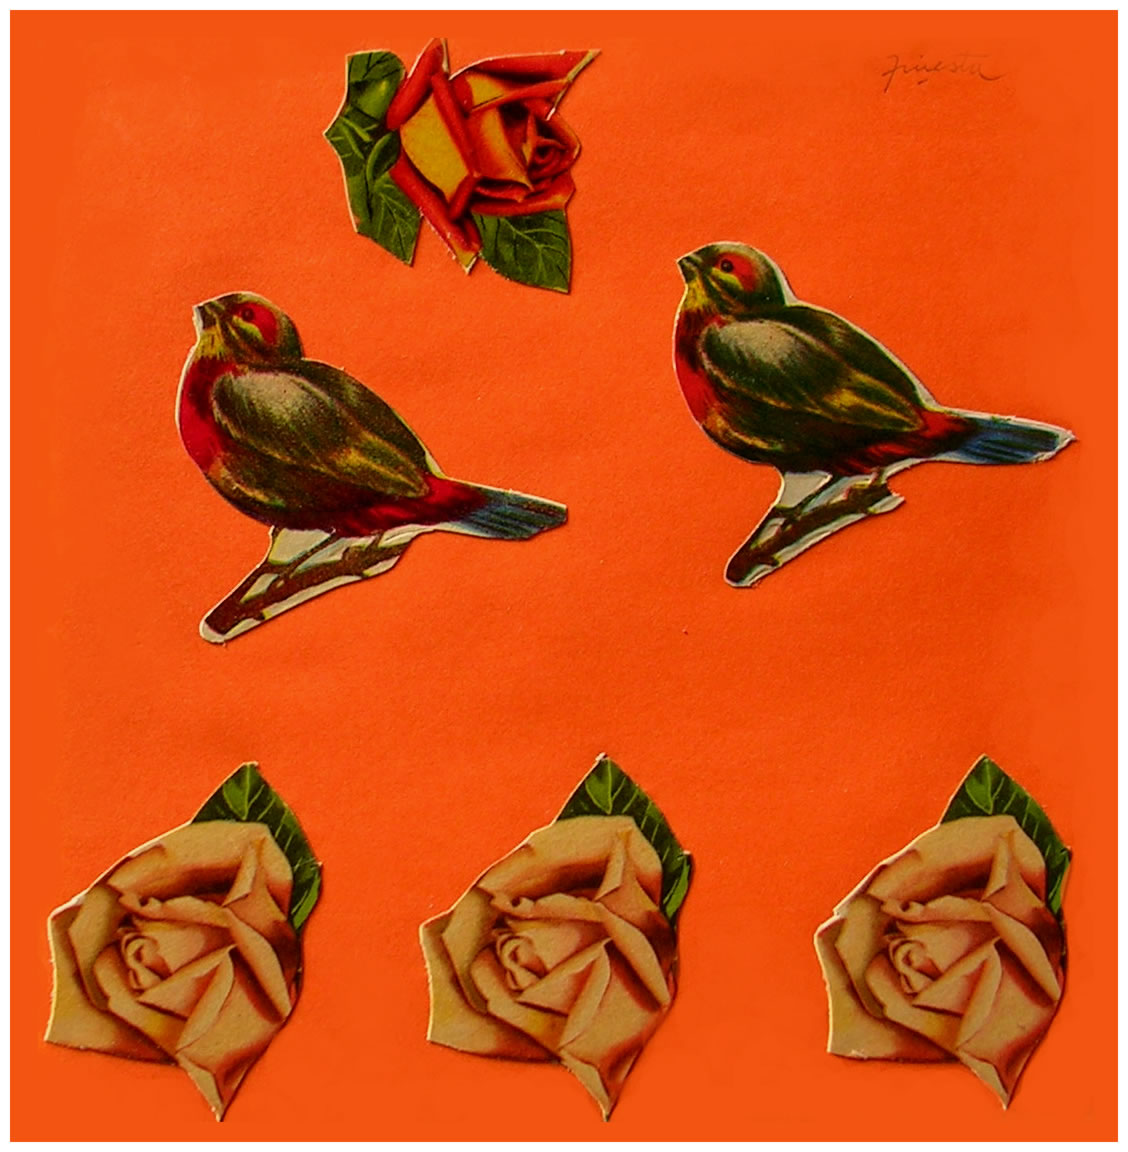 Pájaros y rosas II,  papel collage, 15 cm x 15 cm, 1999